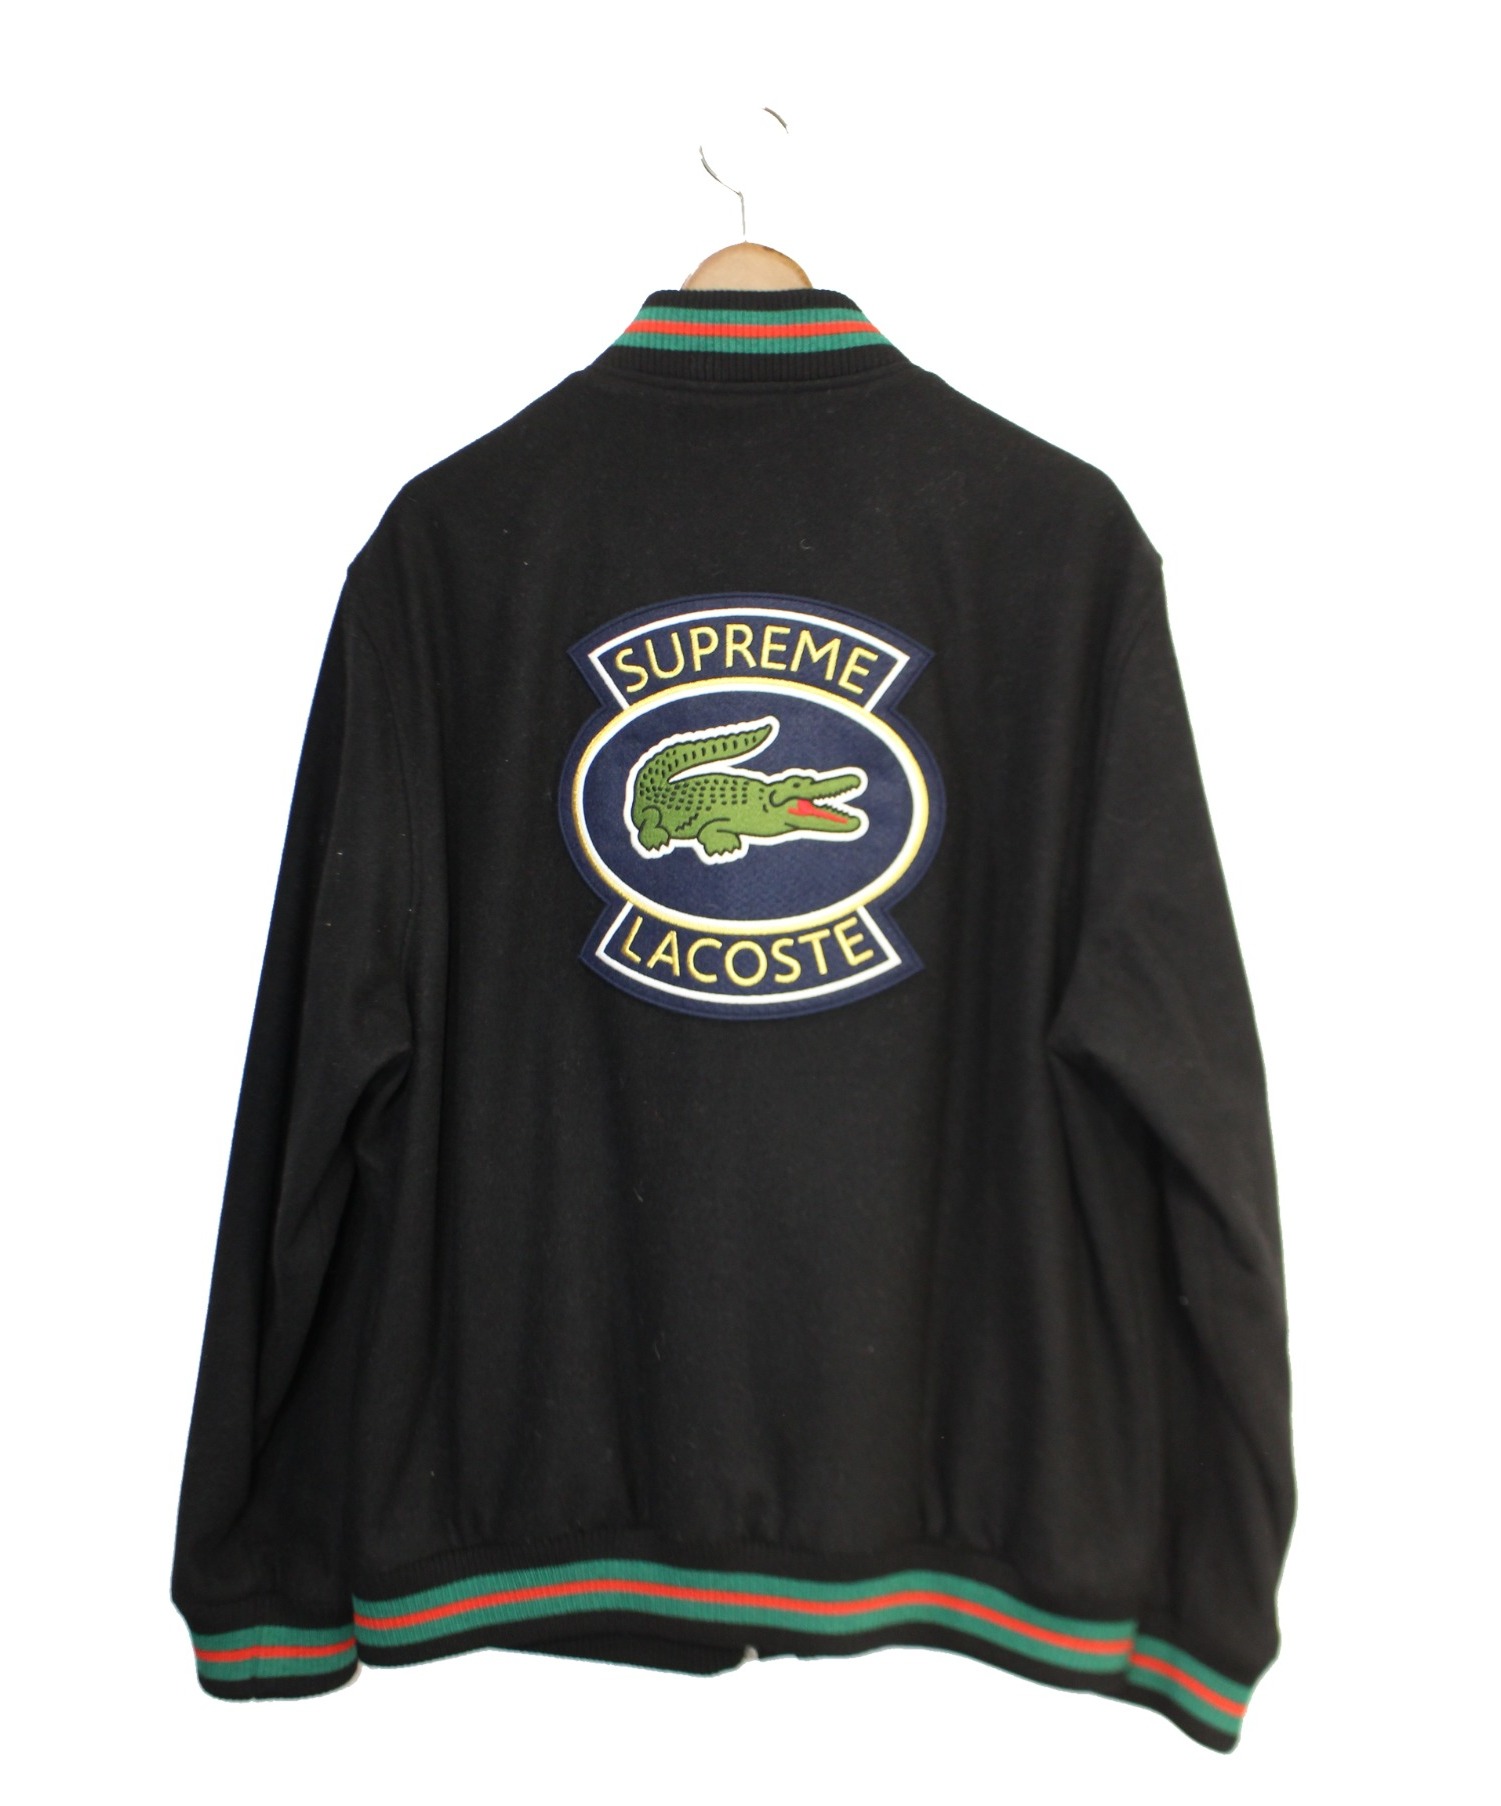 Supreme× LACOSE (シュプリーム×ラコステ) Wool Varsity Jacket ブラック サイズ:XL